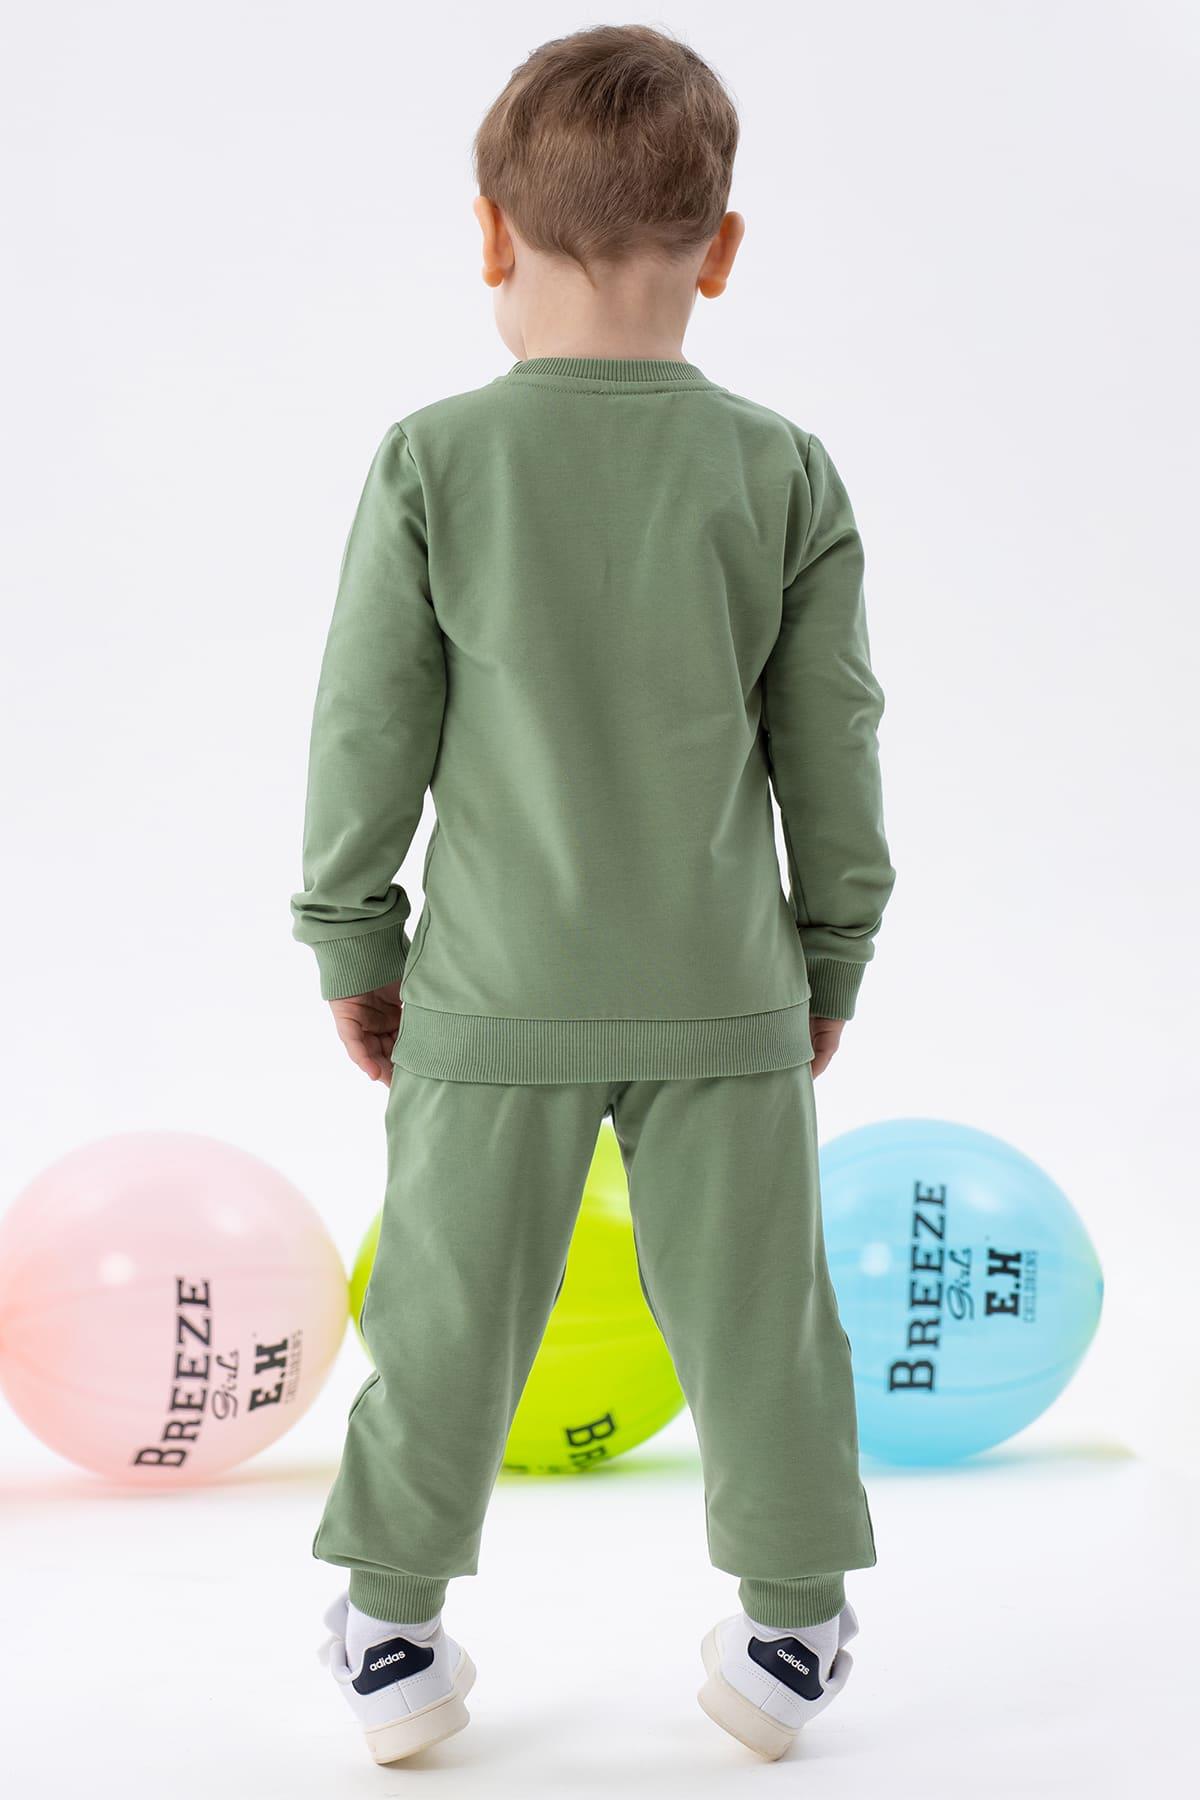 Erkek Çocuk Eşofman Takımı Astronot Ayıcıklar Baskılı Mint Yeşili 2-3 Yaş  -Sıcacıkl Çocuk Takımları | Breeze